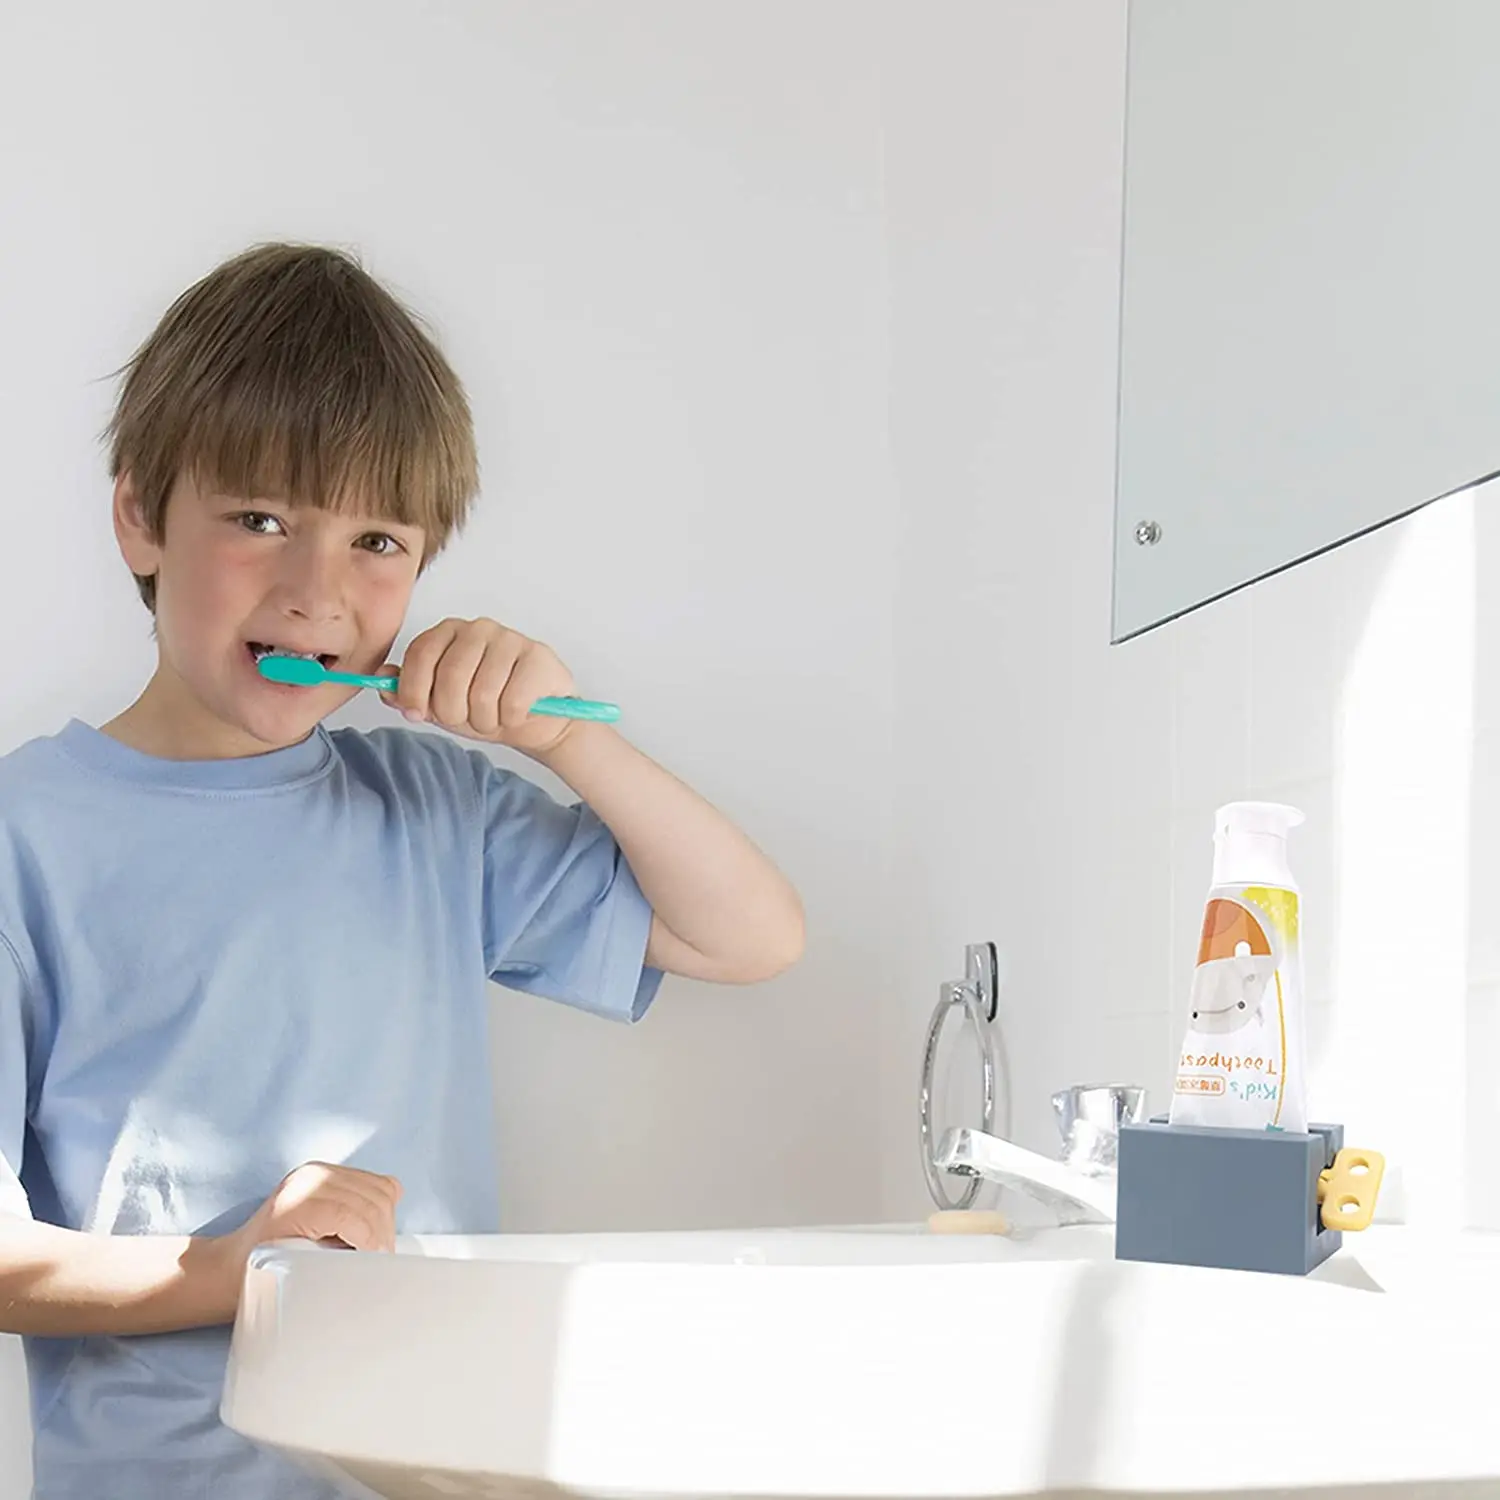 soporte para pasta de dientes tubo rodante exprimidor de pasta de dientes con asas esmeriladas ahorra pasta de dientes y cremas 4 exprimidores de pasta de dientes 4 colores 